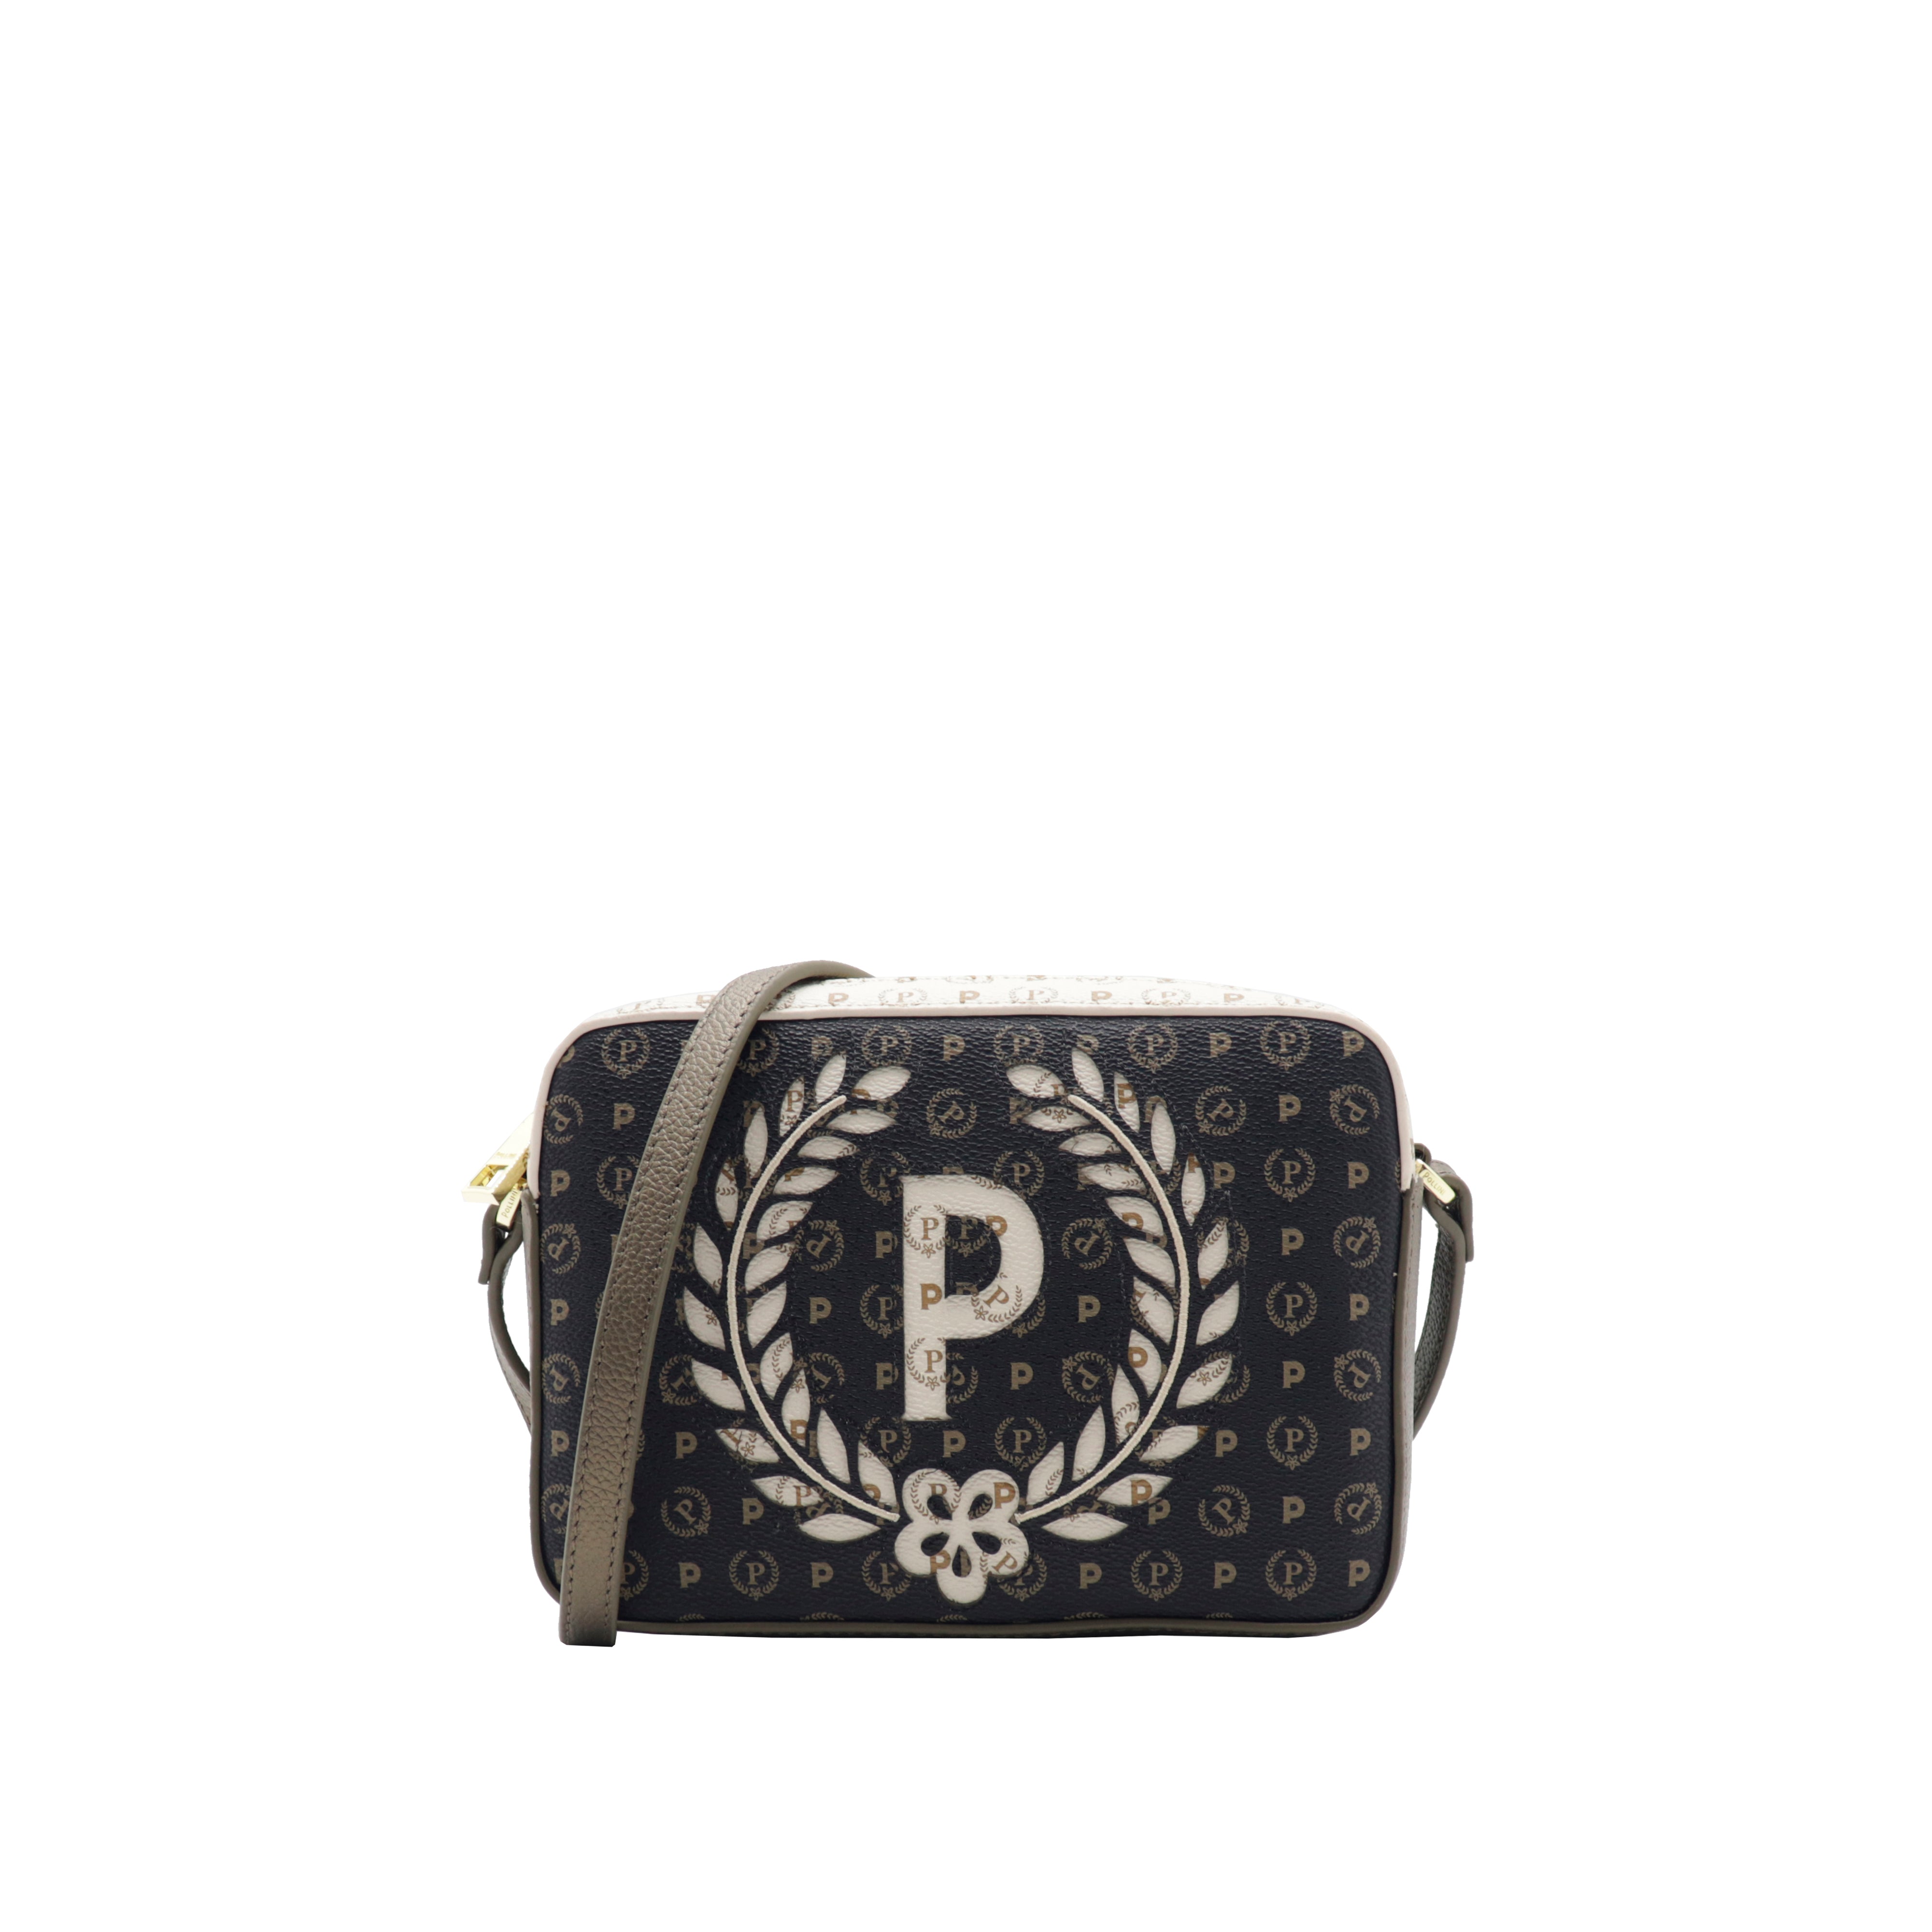 Pollini Heritage shoulder bag Black and Ivory